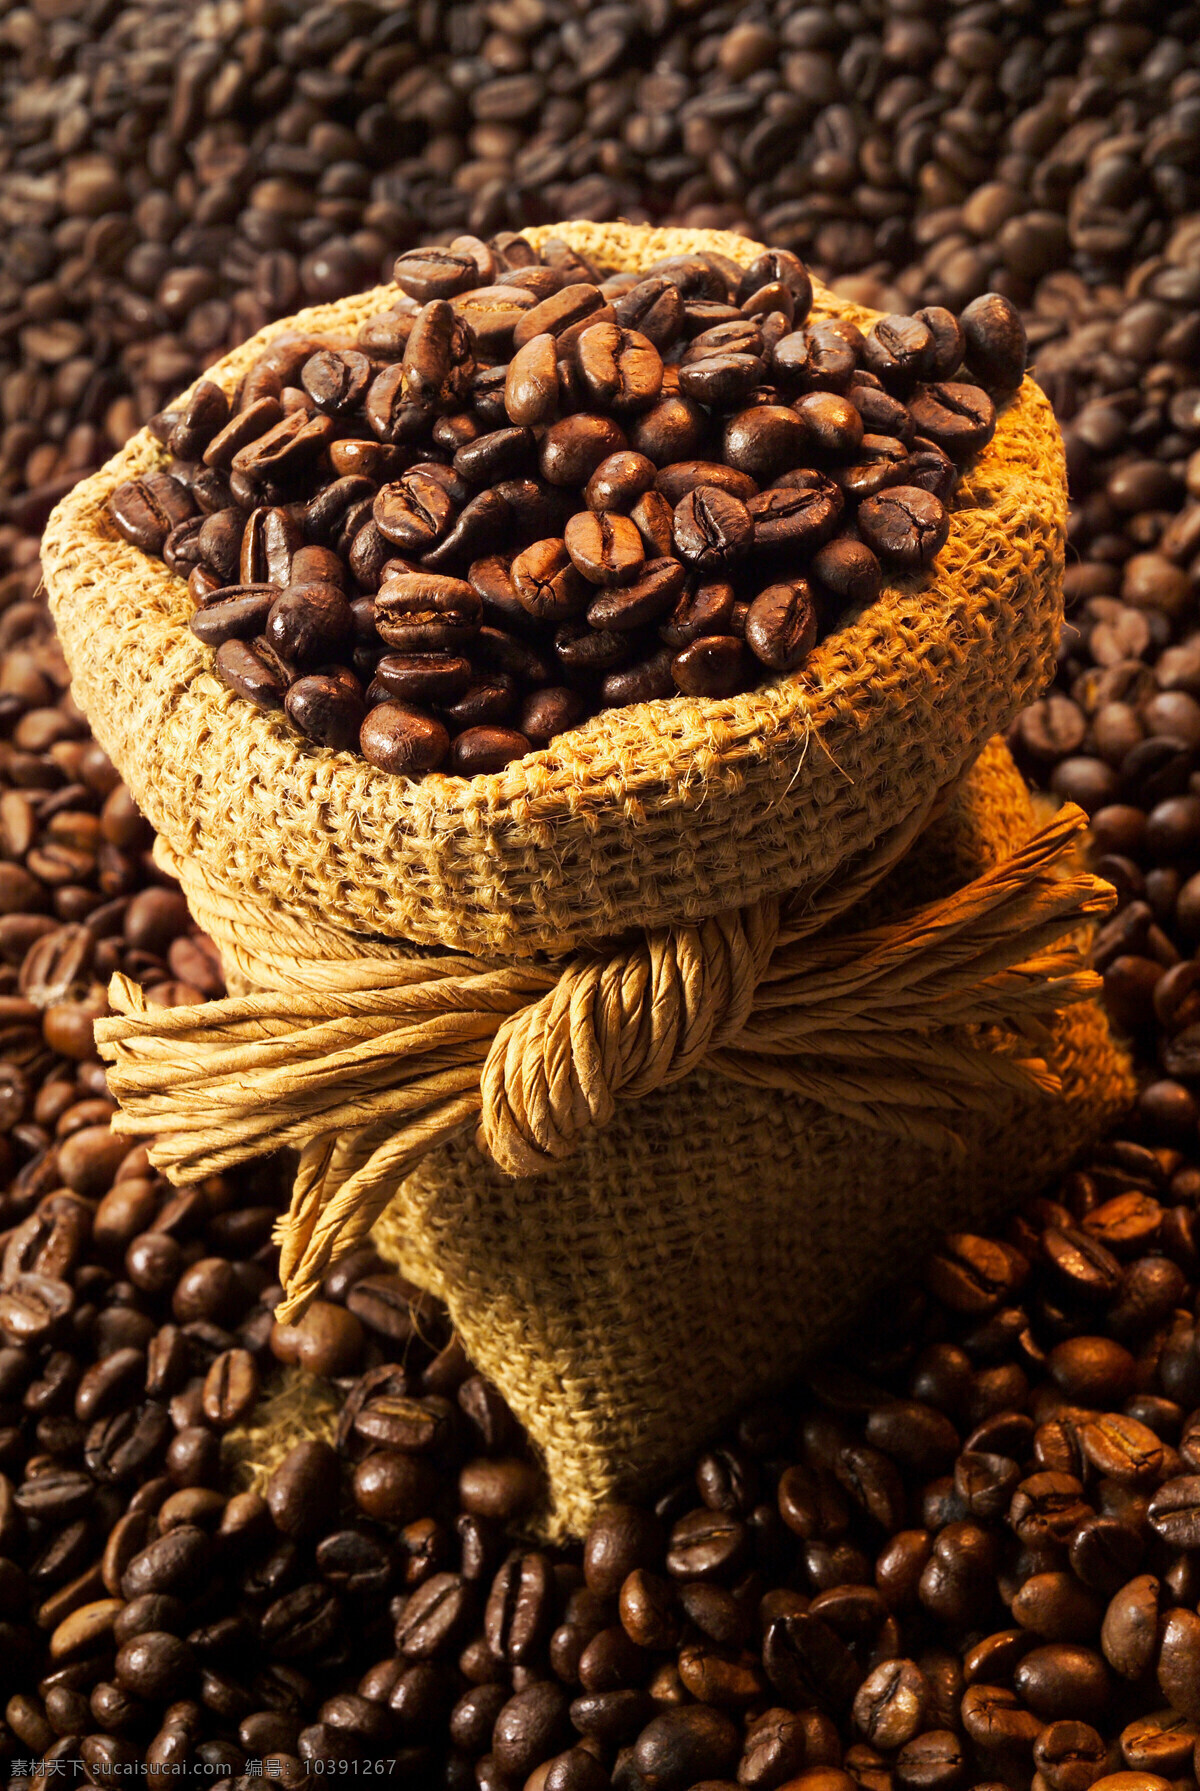 麻袋 咖啡豆 coffee 许多咖啡豆 原材料 原料 颗粒 装有 一麻袋 一麻袋咖啡豆 一片咖啡豆 高清图片 咖啡图片 餐饮美食